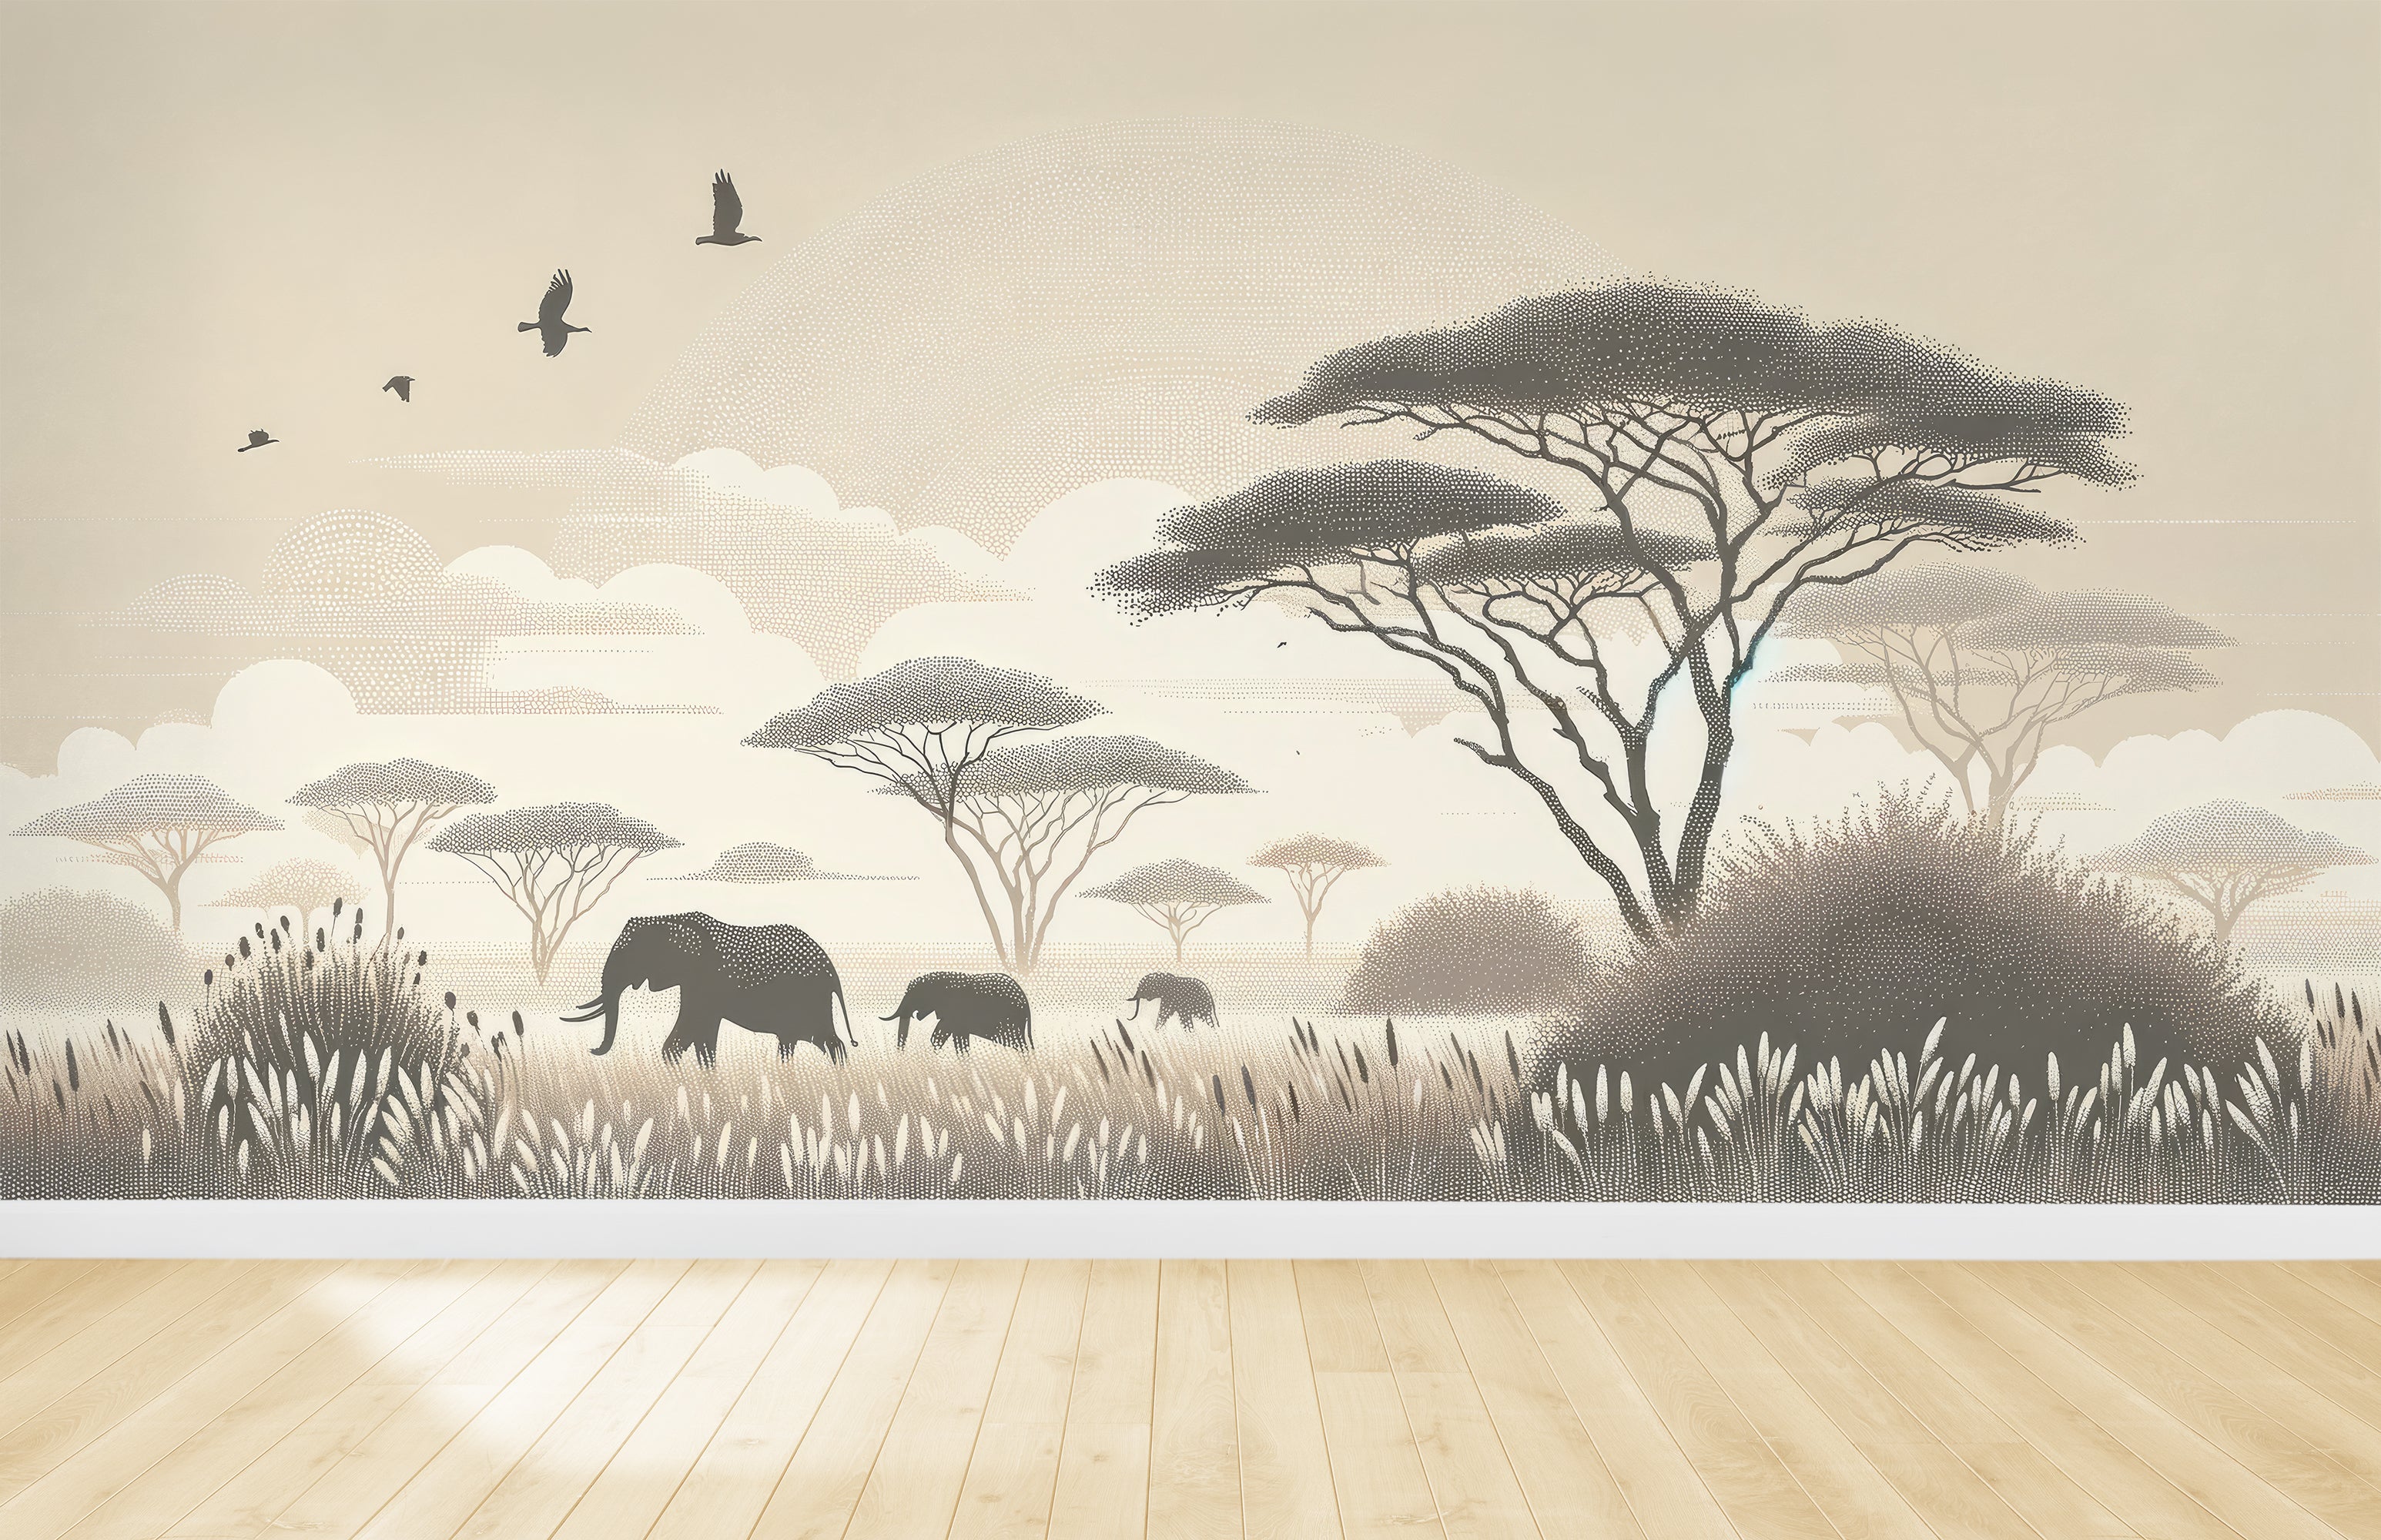 Afrikanische Safari – Elefanten und Akazien